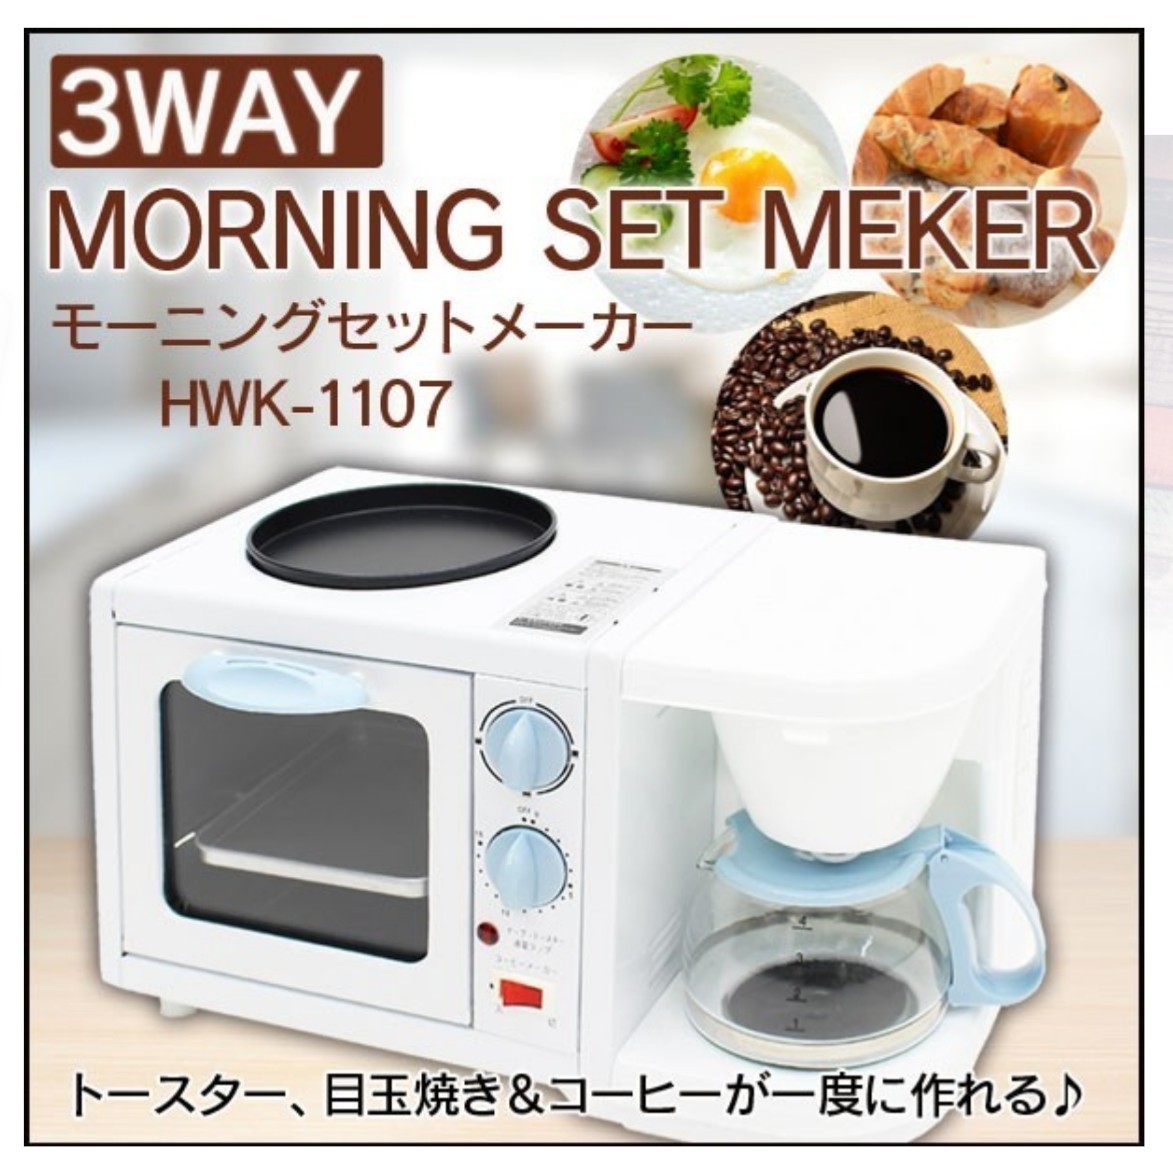 ホットプレート付オーブントースター兼コーヒーメーカー/モーニングメーカーHWK